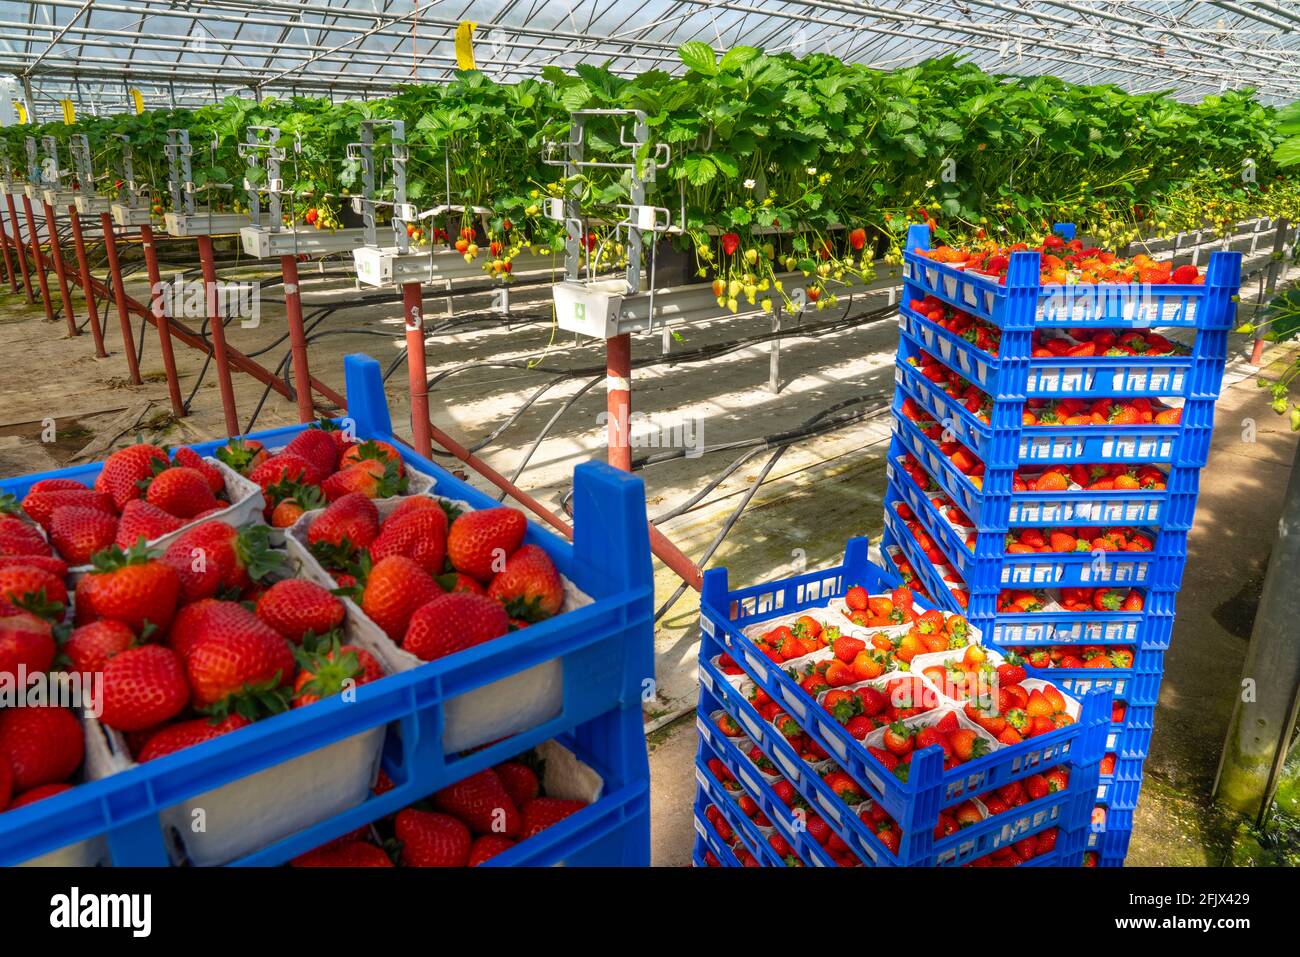 Frisch geerntete Erdbeeren, verpackt in Schachteln und Kästen für den Verbraucher, Erdbeeranbau im Gewächshaus, junge Erdbeerpflanzen wachsen heran, Foto de stock